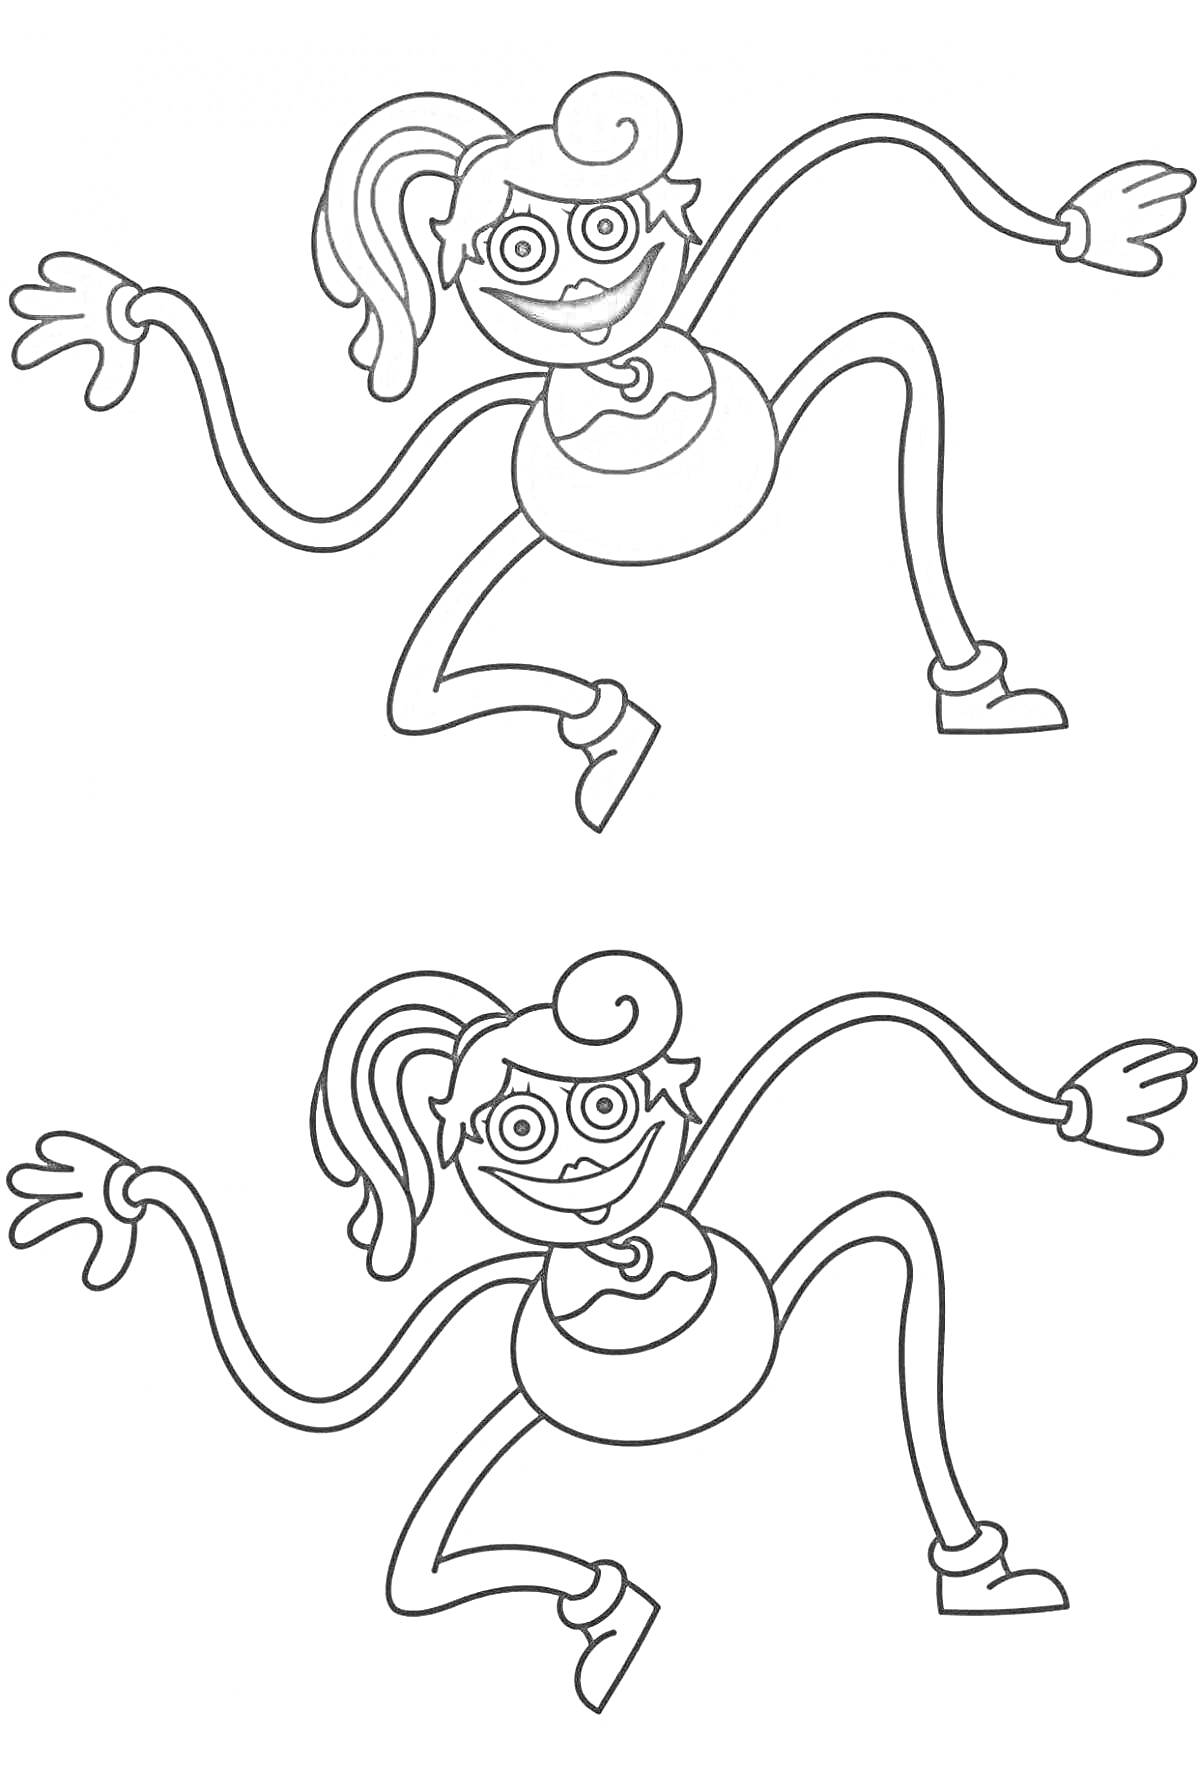 Раскраска Два изображения Mommy Long Legs с длинными руками и ногами, с хвостиком на голове, в очках, с улыбкой на лице и с туфлями на ногах